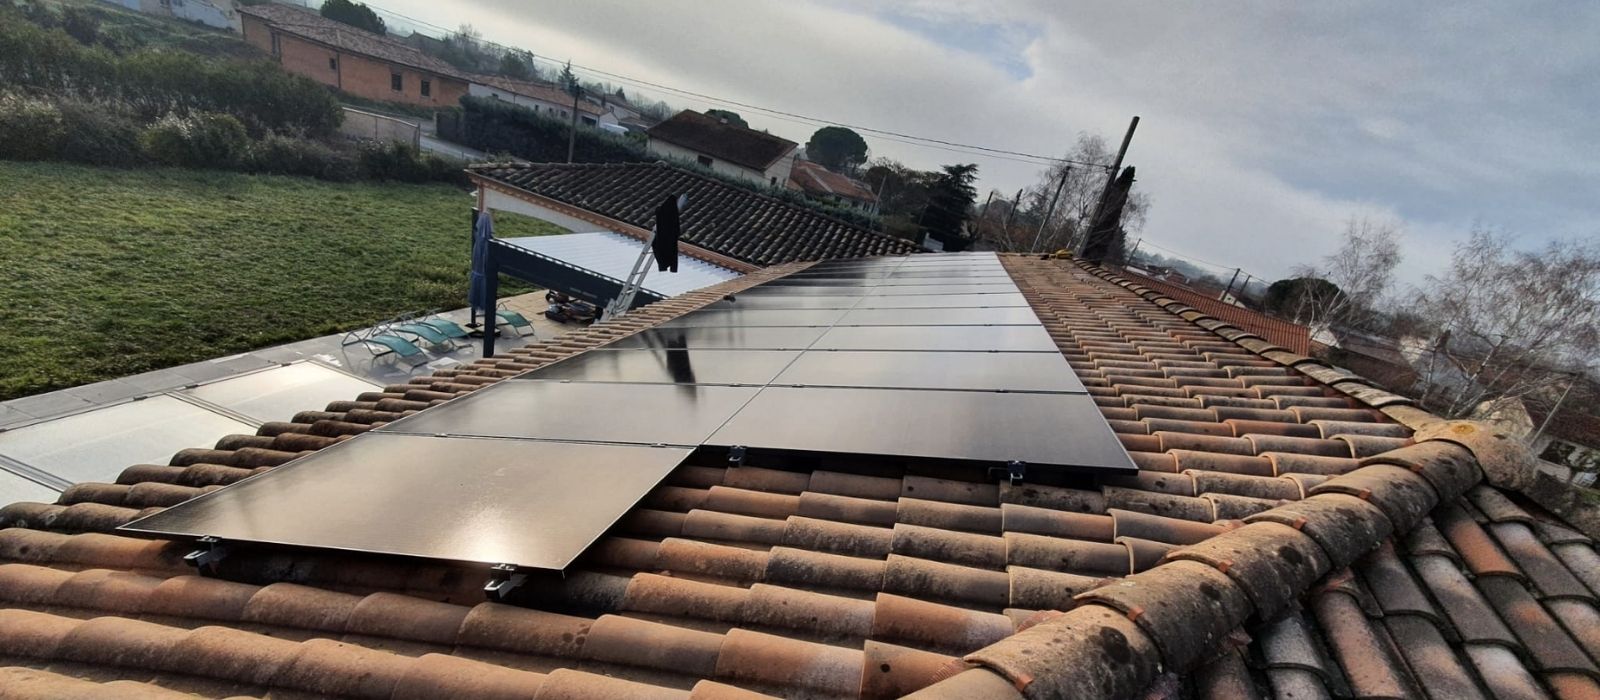 panneaux solaires photovoltaiques toiture